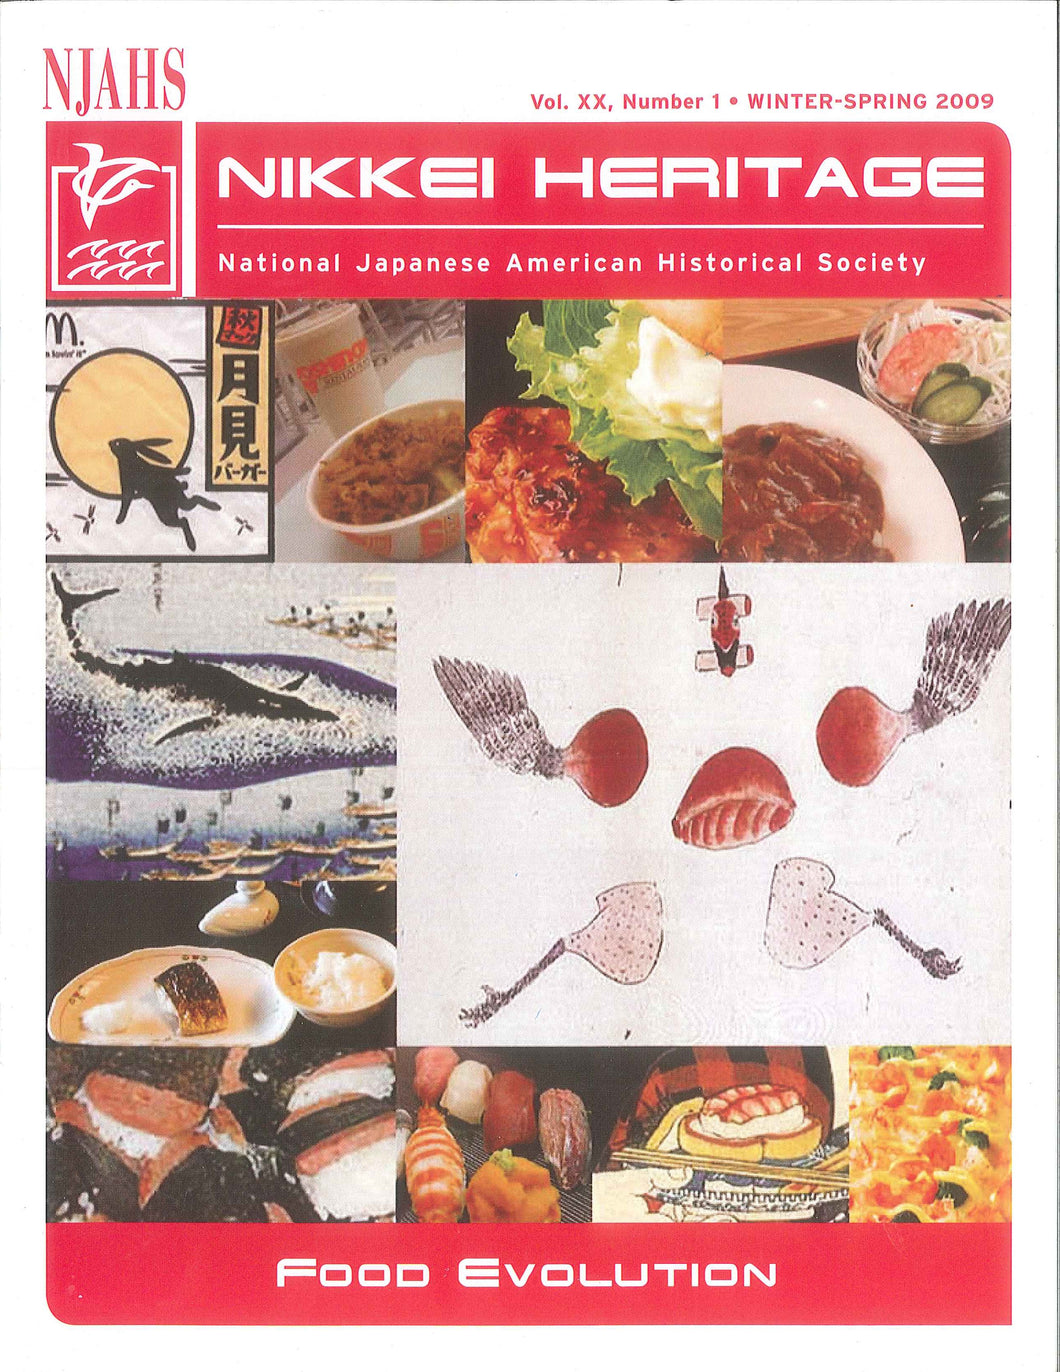 Nikkei Heritage - Food Evolution